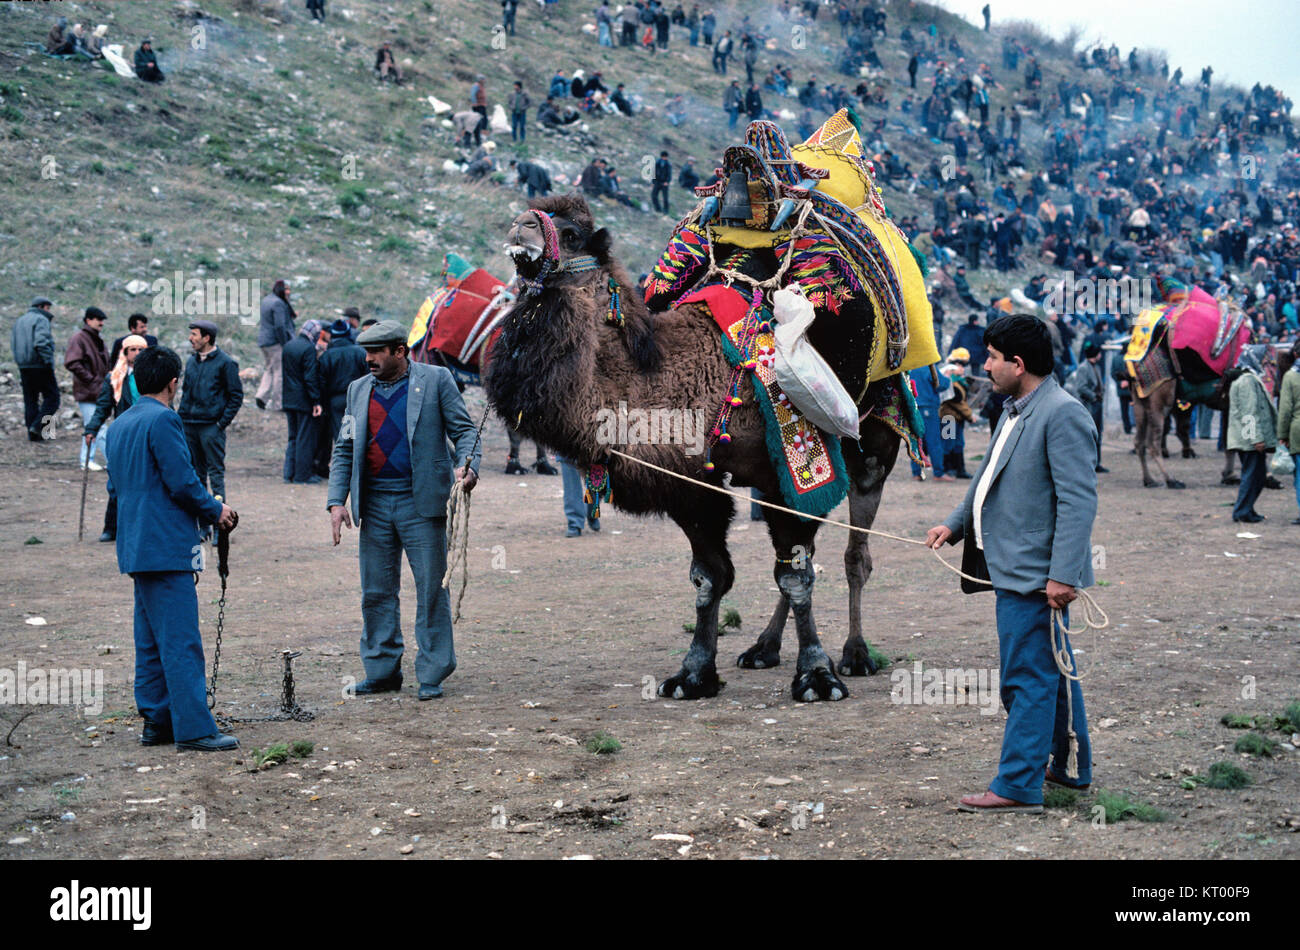 Les hommes turcs ou des Turcs et habillé des chameaux ou dromadaires lutte se rassemblent à la lutte de chameaux annuel Festival tenu à l'Amphithéâtre antique d'Éphèse Turquie Banque D'Images